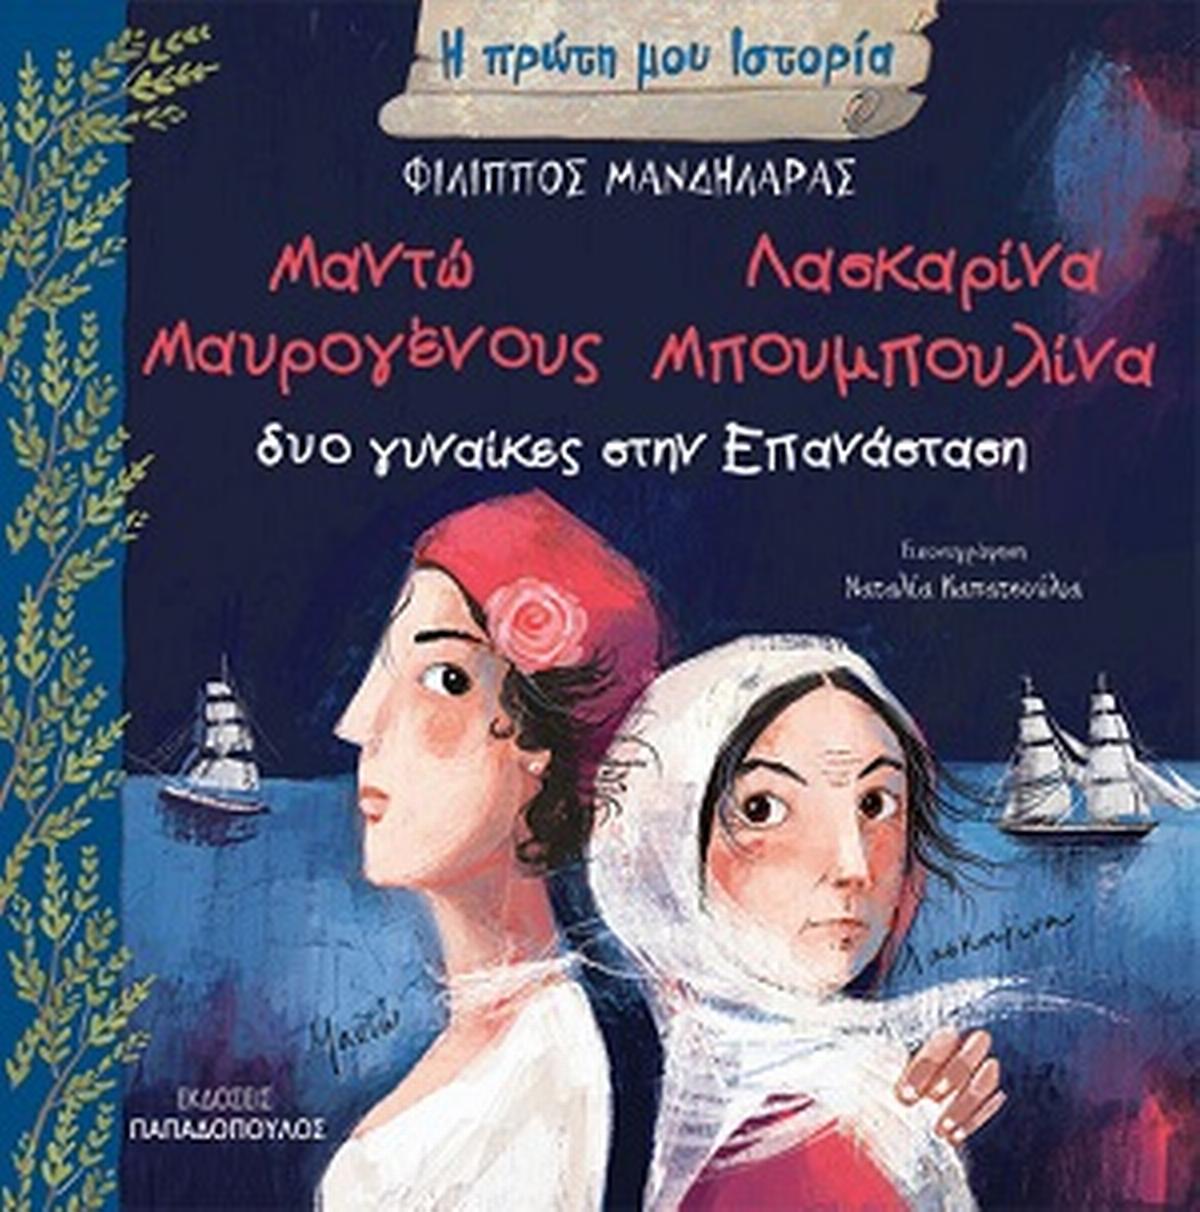 Δύο γυναίκες στην Επανάσταση: Μαντώ Μαυρογένους - Λασκαρίνα Μπουμπουλίνα